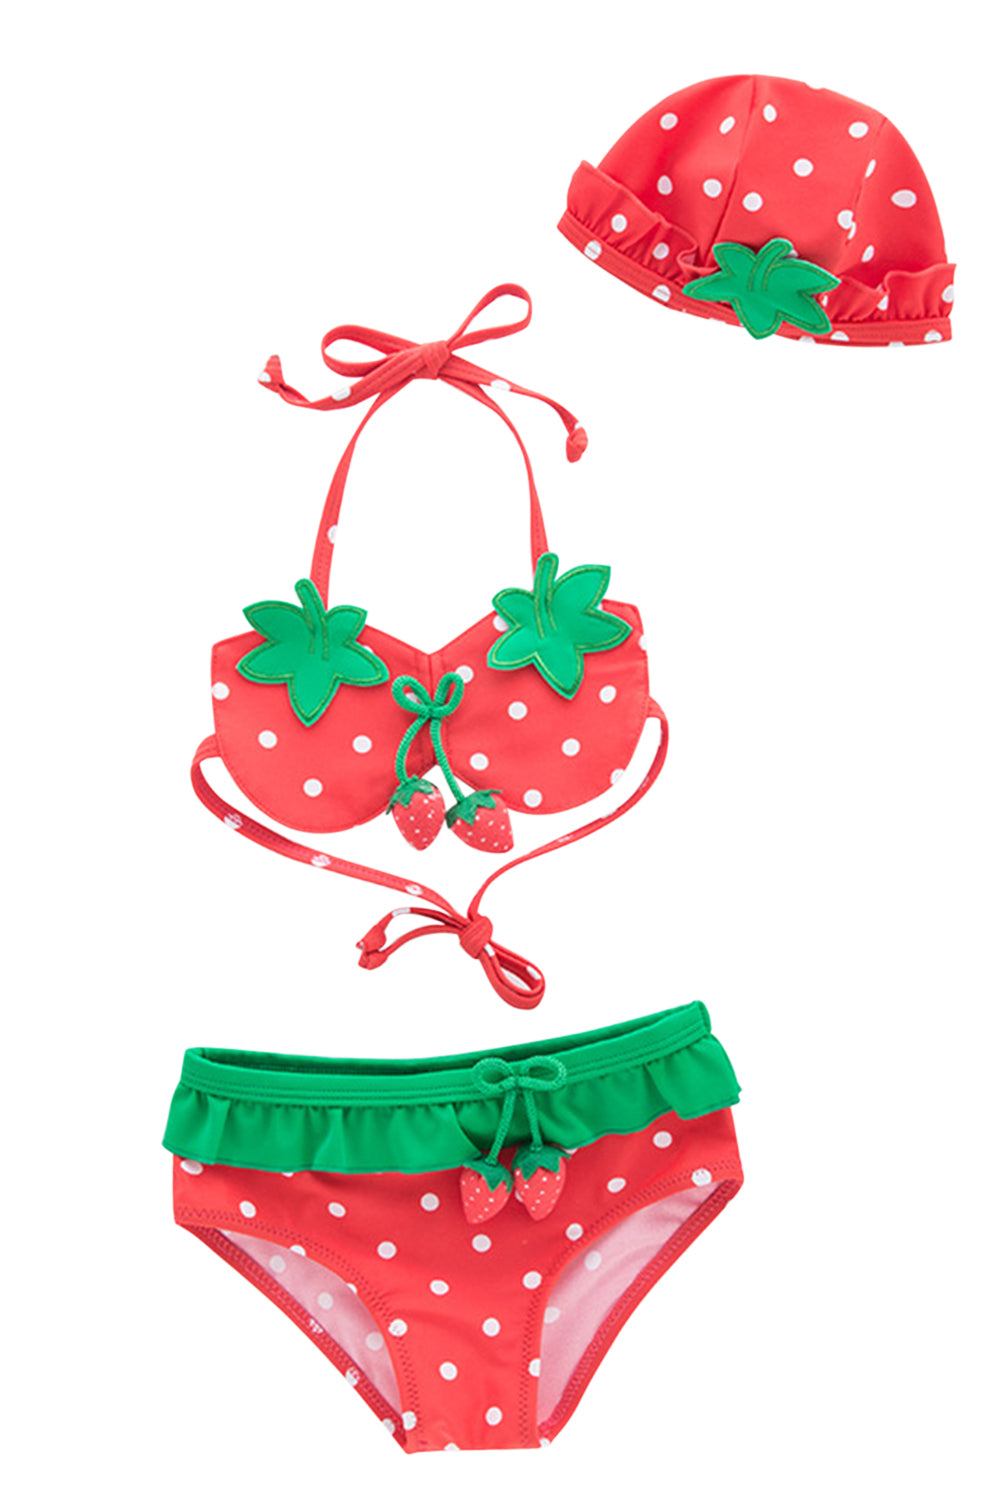 Iyasson Strawberry Printing Flounce Baby Girl Bikini Sets